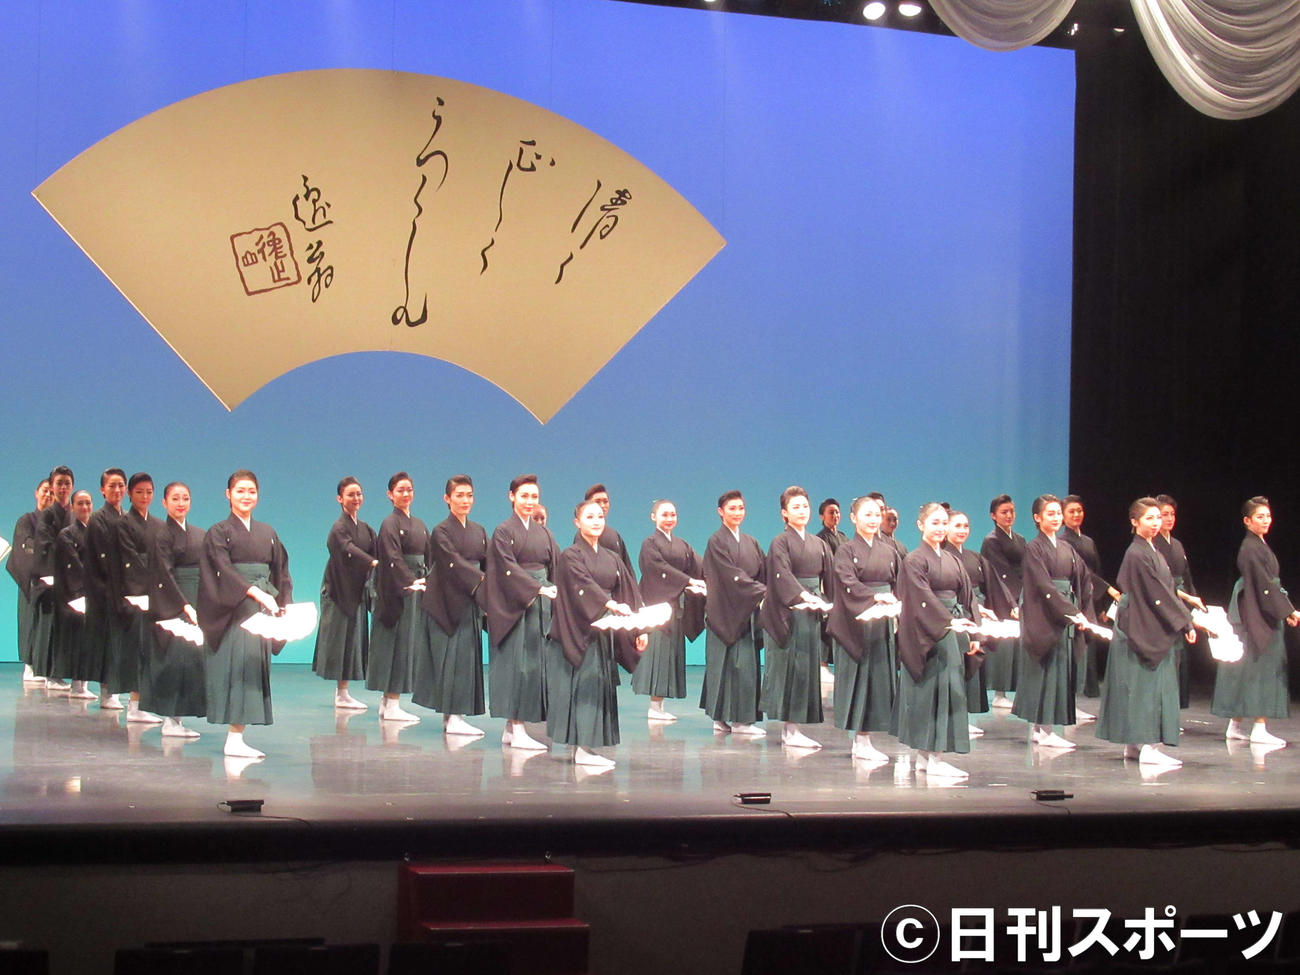 宝塚音楽学校第106期生文化祭公開稽古で、日本舞踊を披露する宝塚音楽学校第106期生（撮影・星名希実）